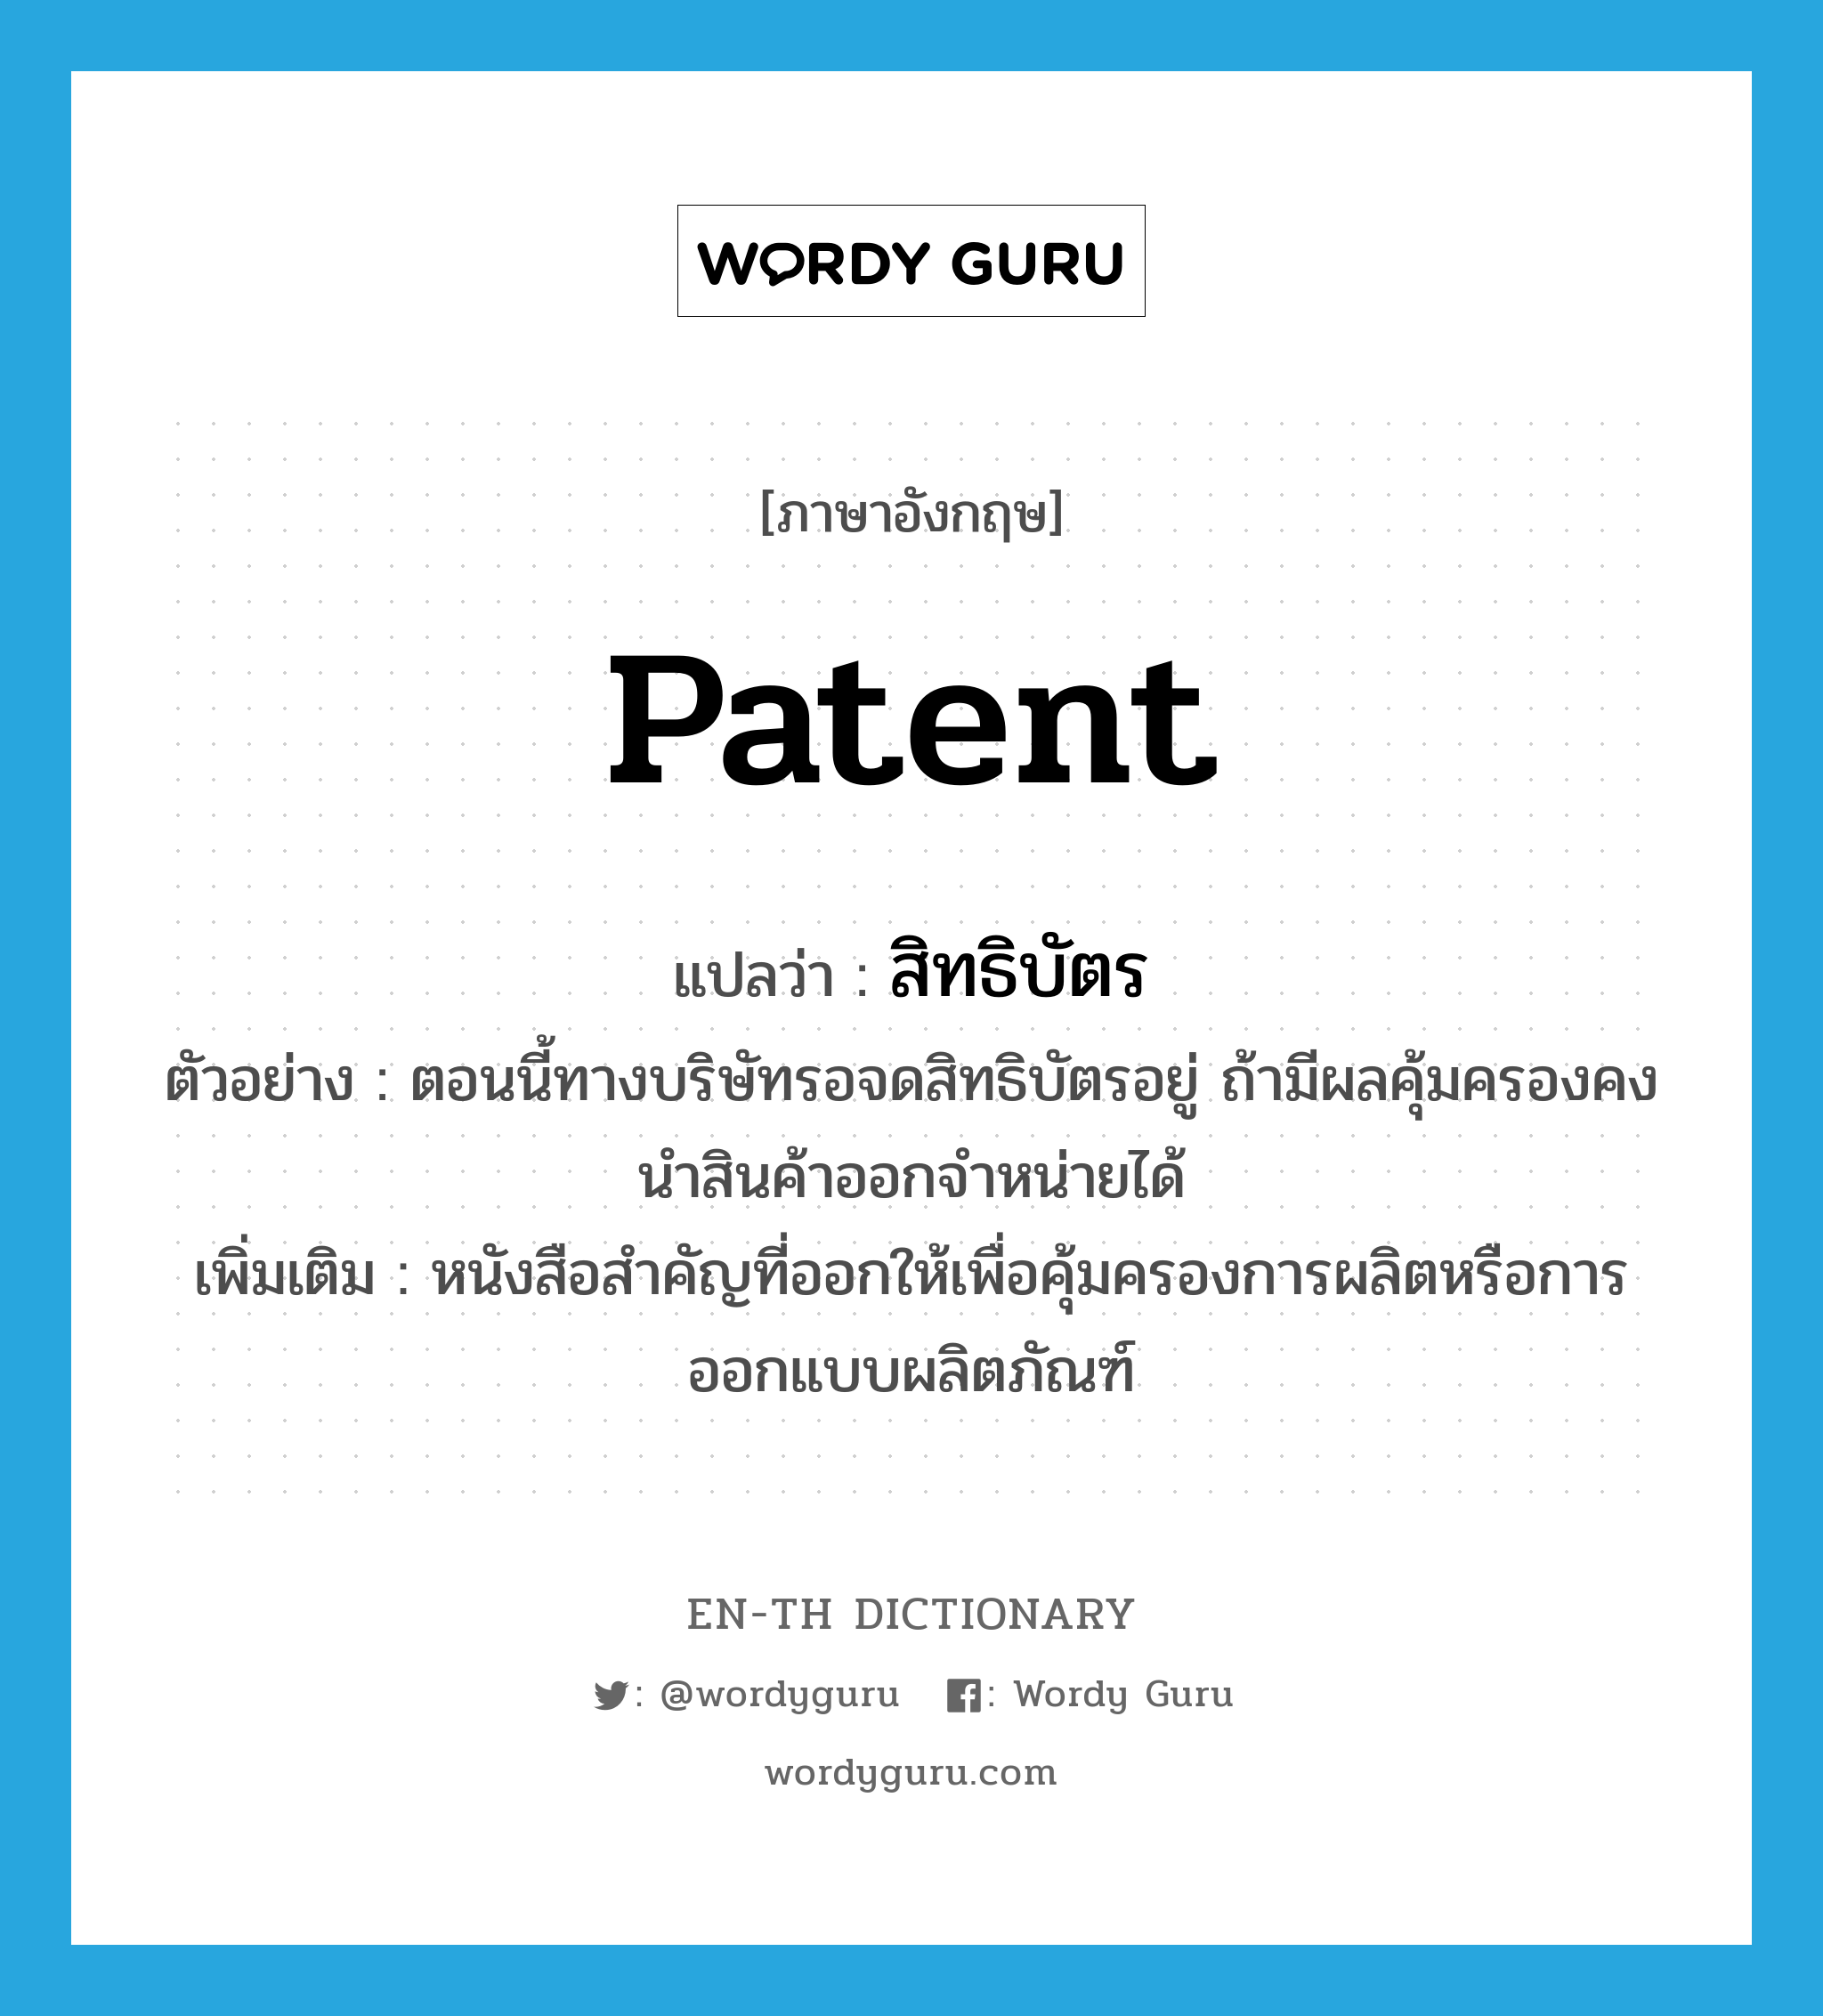 สิทธิบัตร ภาษาอังกฤษ?, คำศัพท์ภาษาอังกฤษ สิทธิบัตร แปลว่า patent ประเภท N ตัวอย่าง ตอนนี้ทางบริษัทรอจดสิทธิบัตรอยู่ ถ้ามีผลคุ้มครองคงนำสินค้าออกจำหน่ายได้ เพิ่มเติม หนังสือสำคัญที่ออกให้เพื่อคุ้มครองการผลิตหรือการออกแบบผลิตภัณฑ์ หมวด N